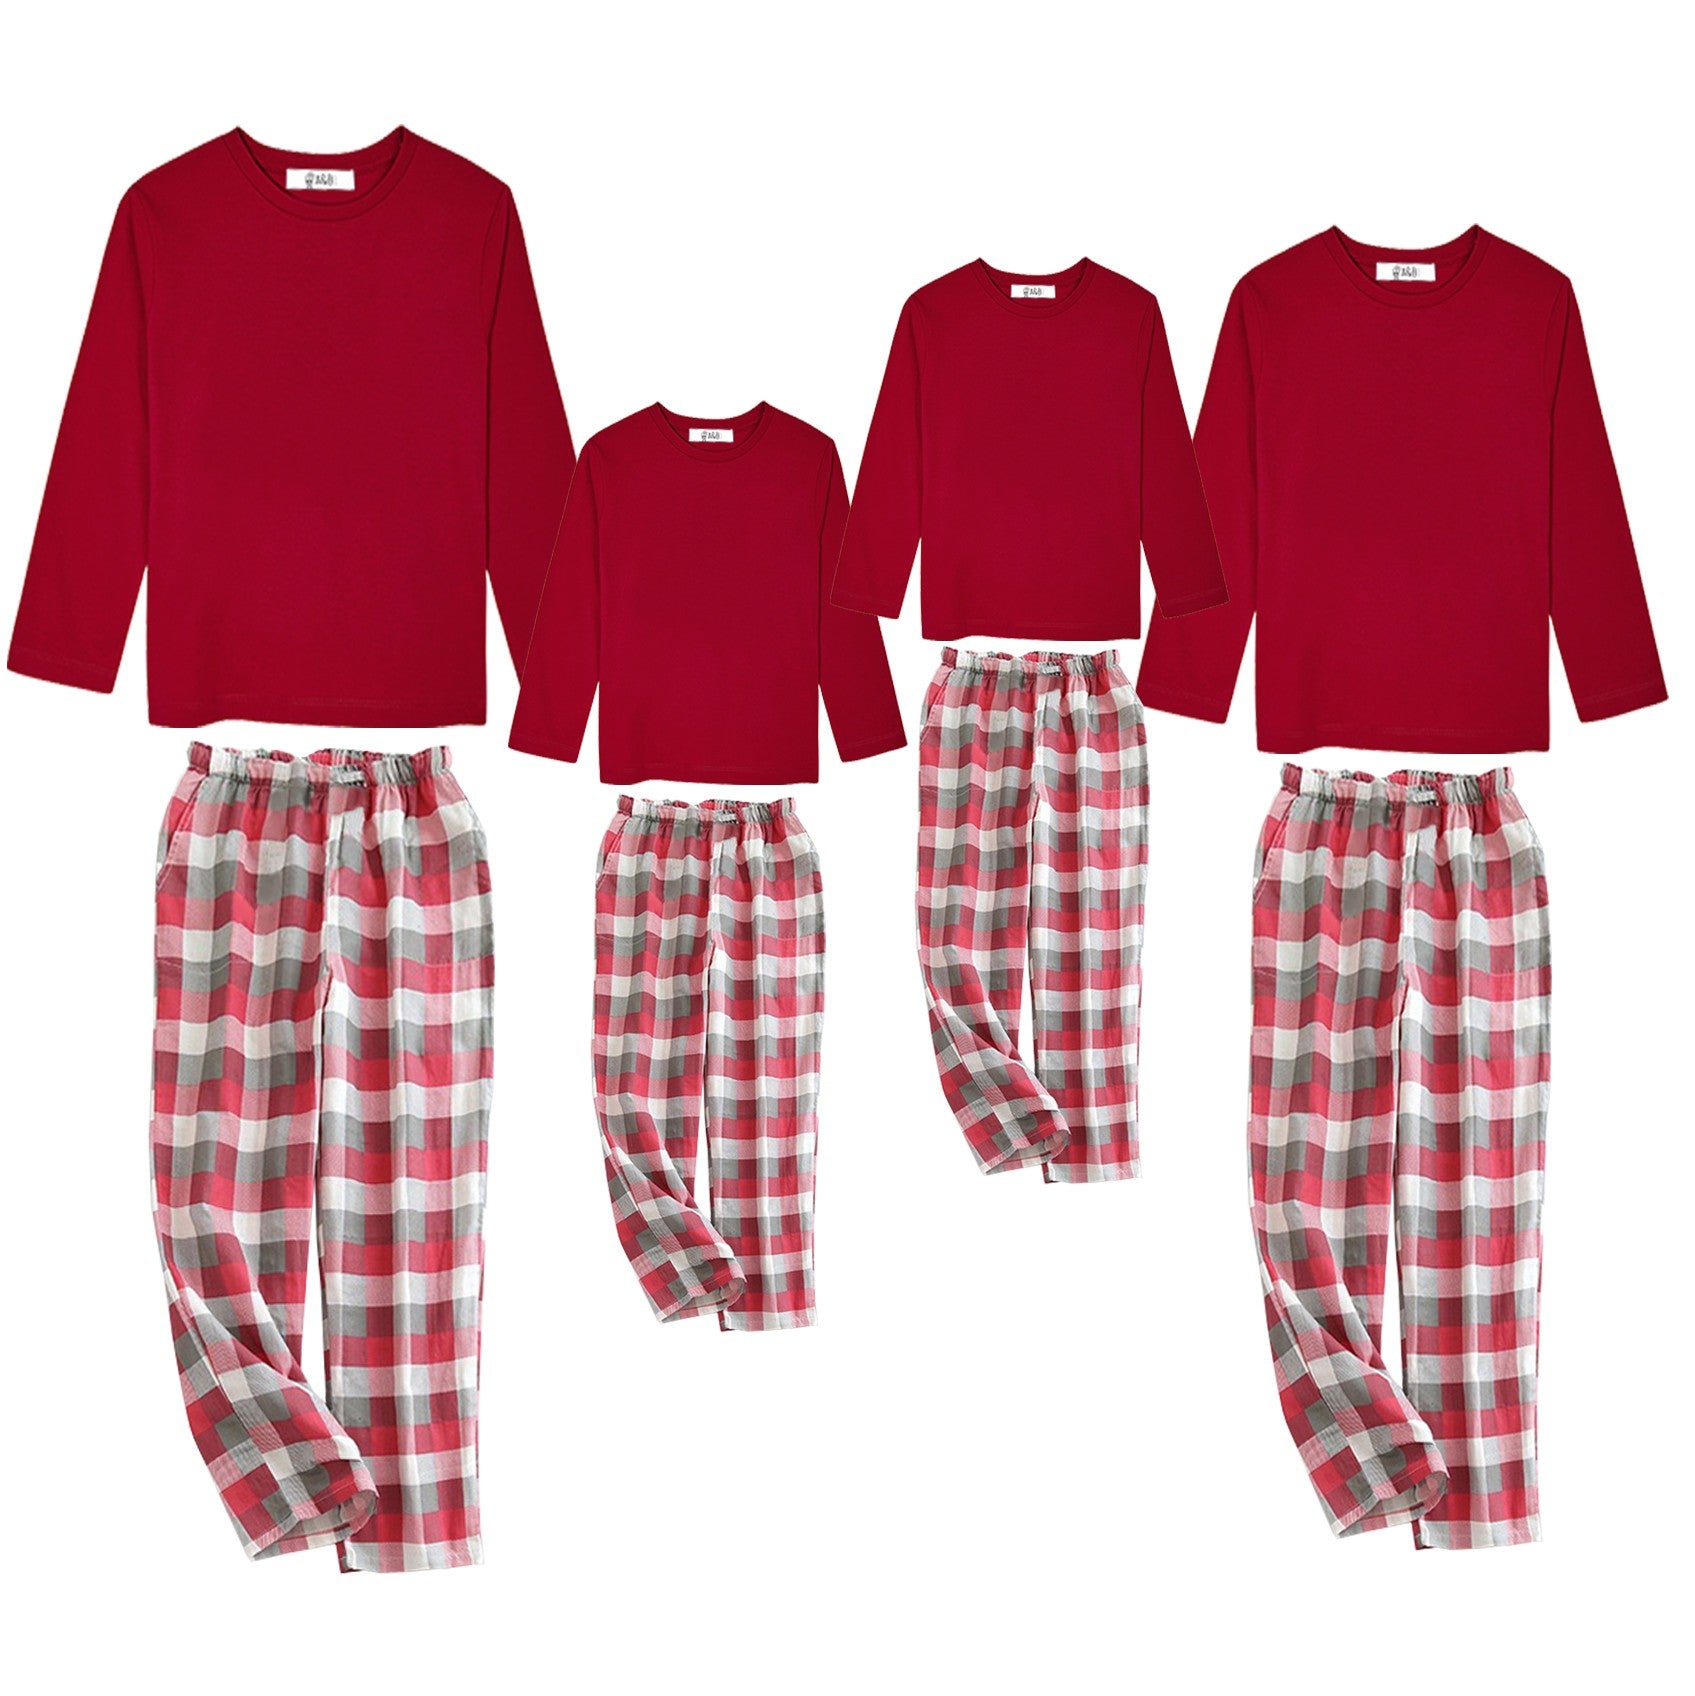 Pijama básico manga larga camiseta y pantalón rojo